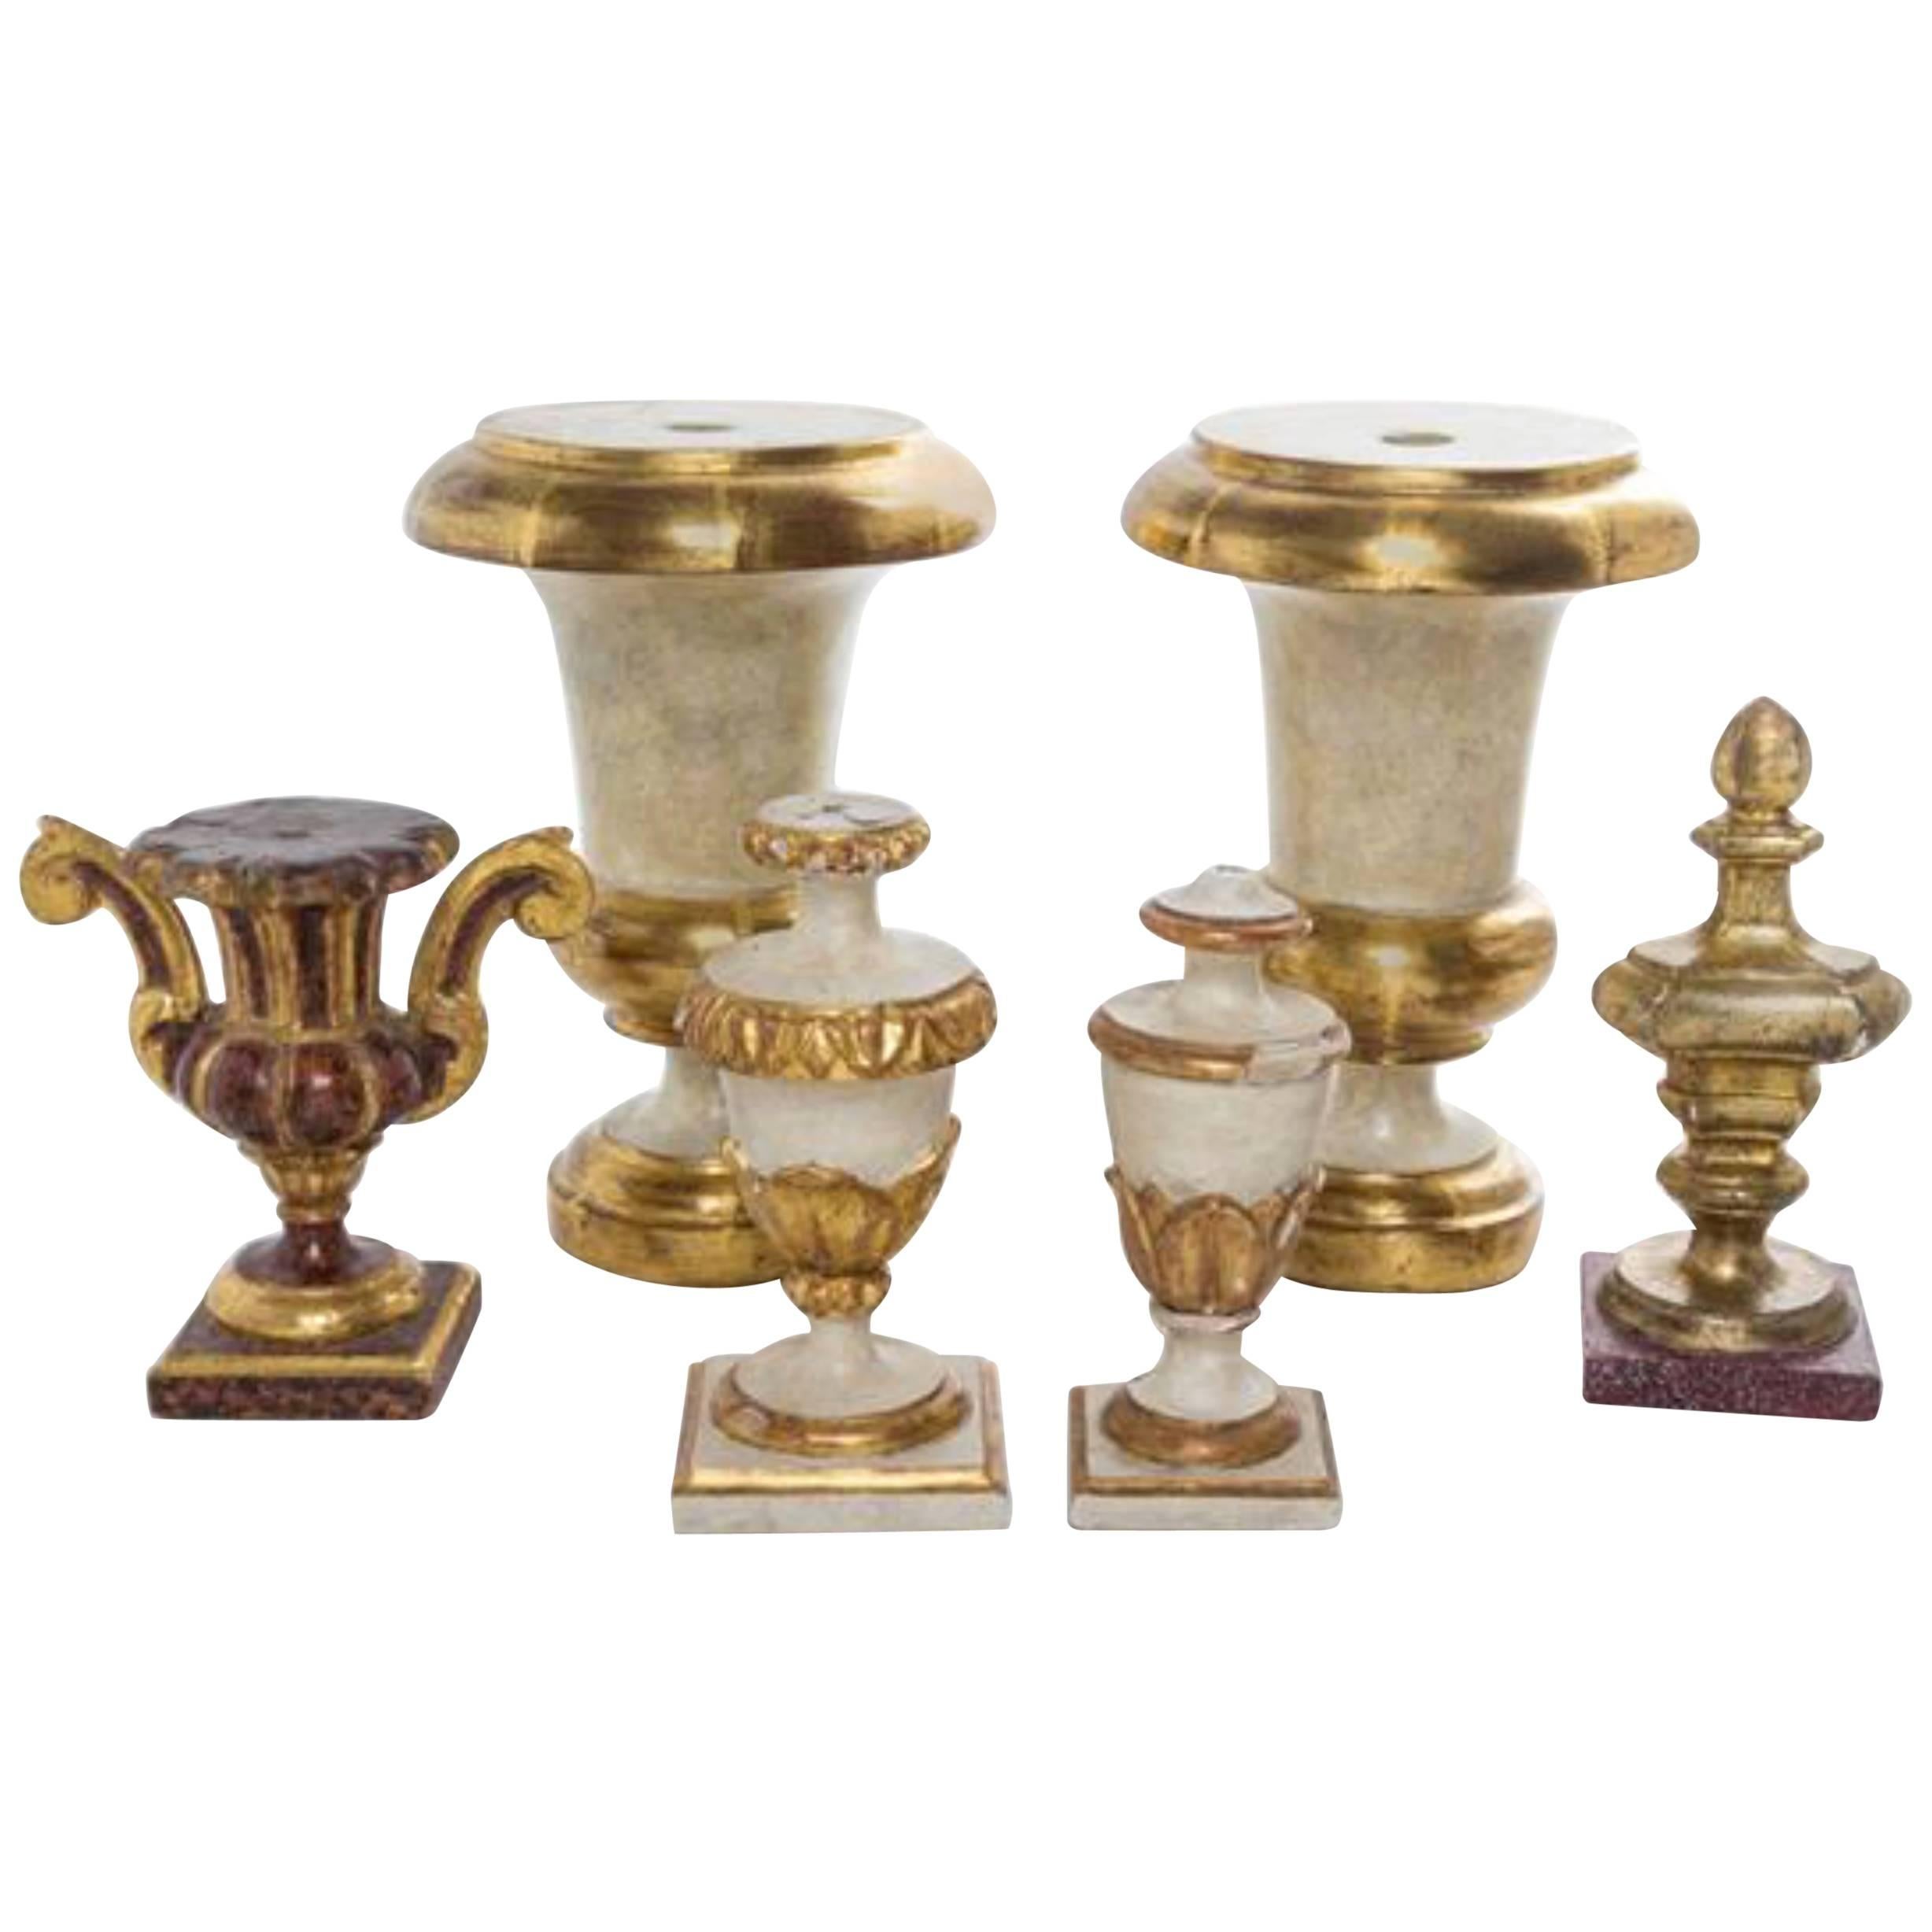 Collection de six urnes italiennes en bois sculpté avec décorations peintes et dorées